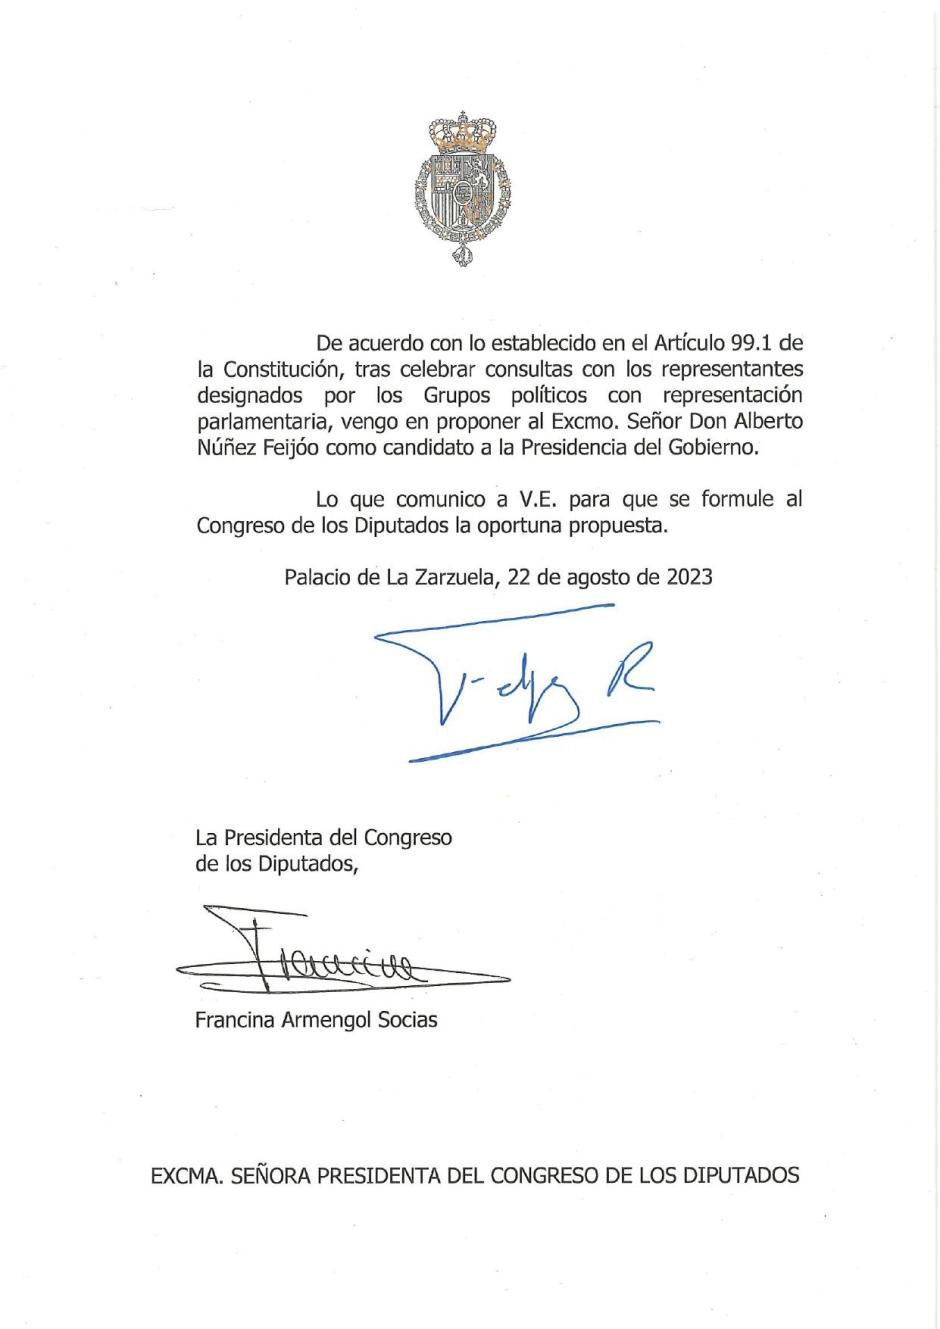 El Rey ha encomendado a Alberto Núñez Feijóo como candidato a la presidencia del Gobierno